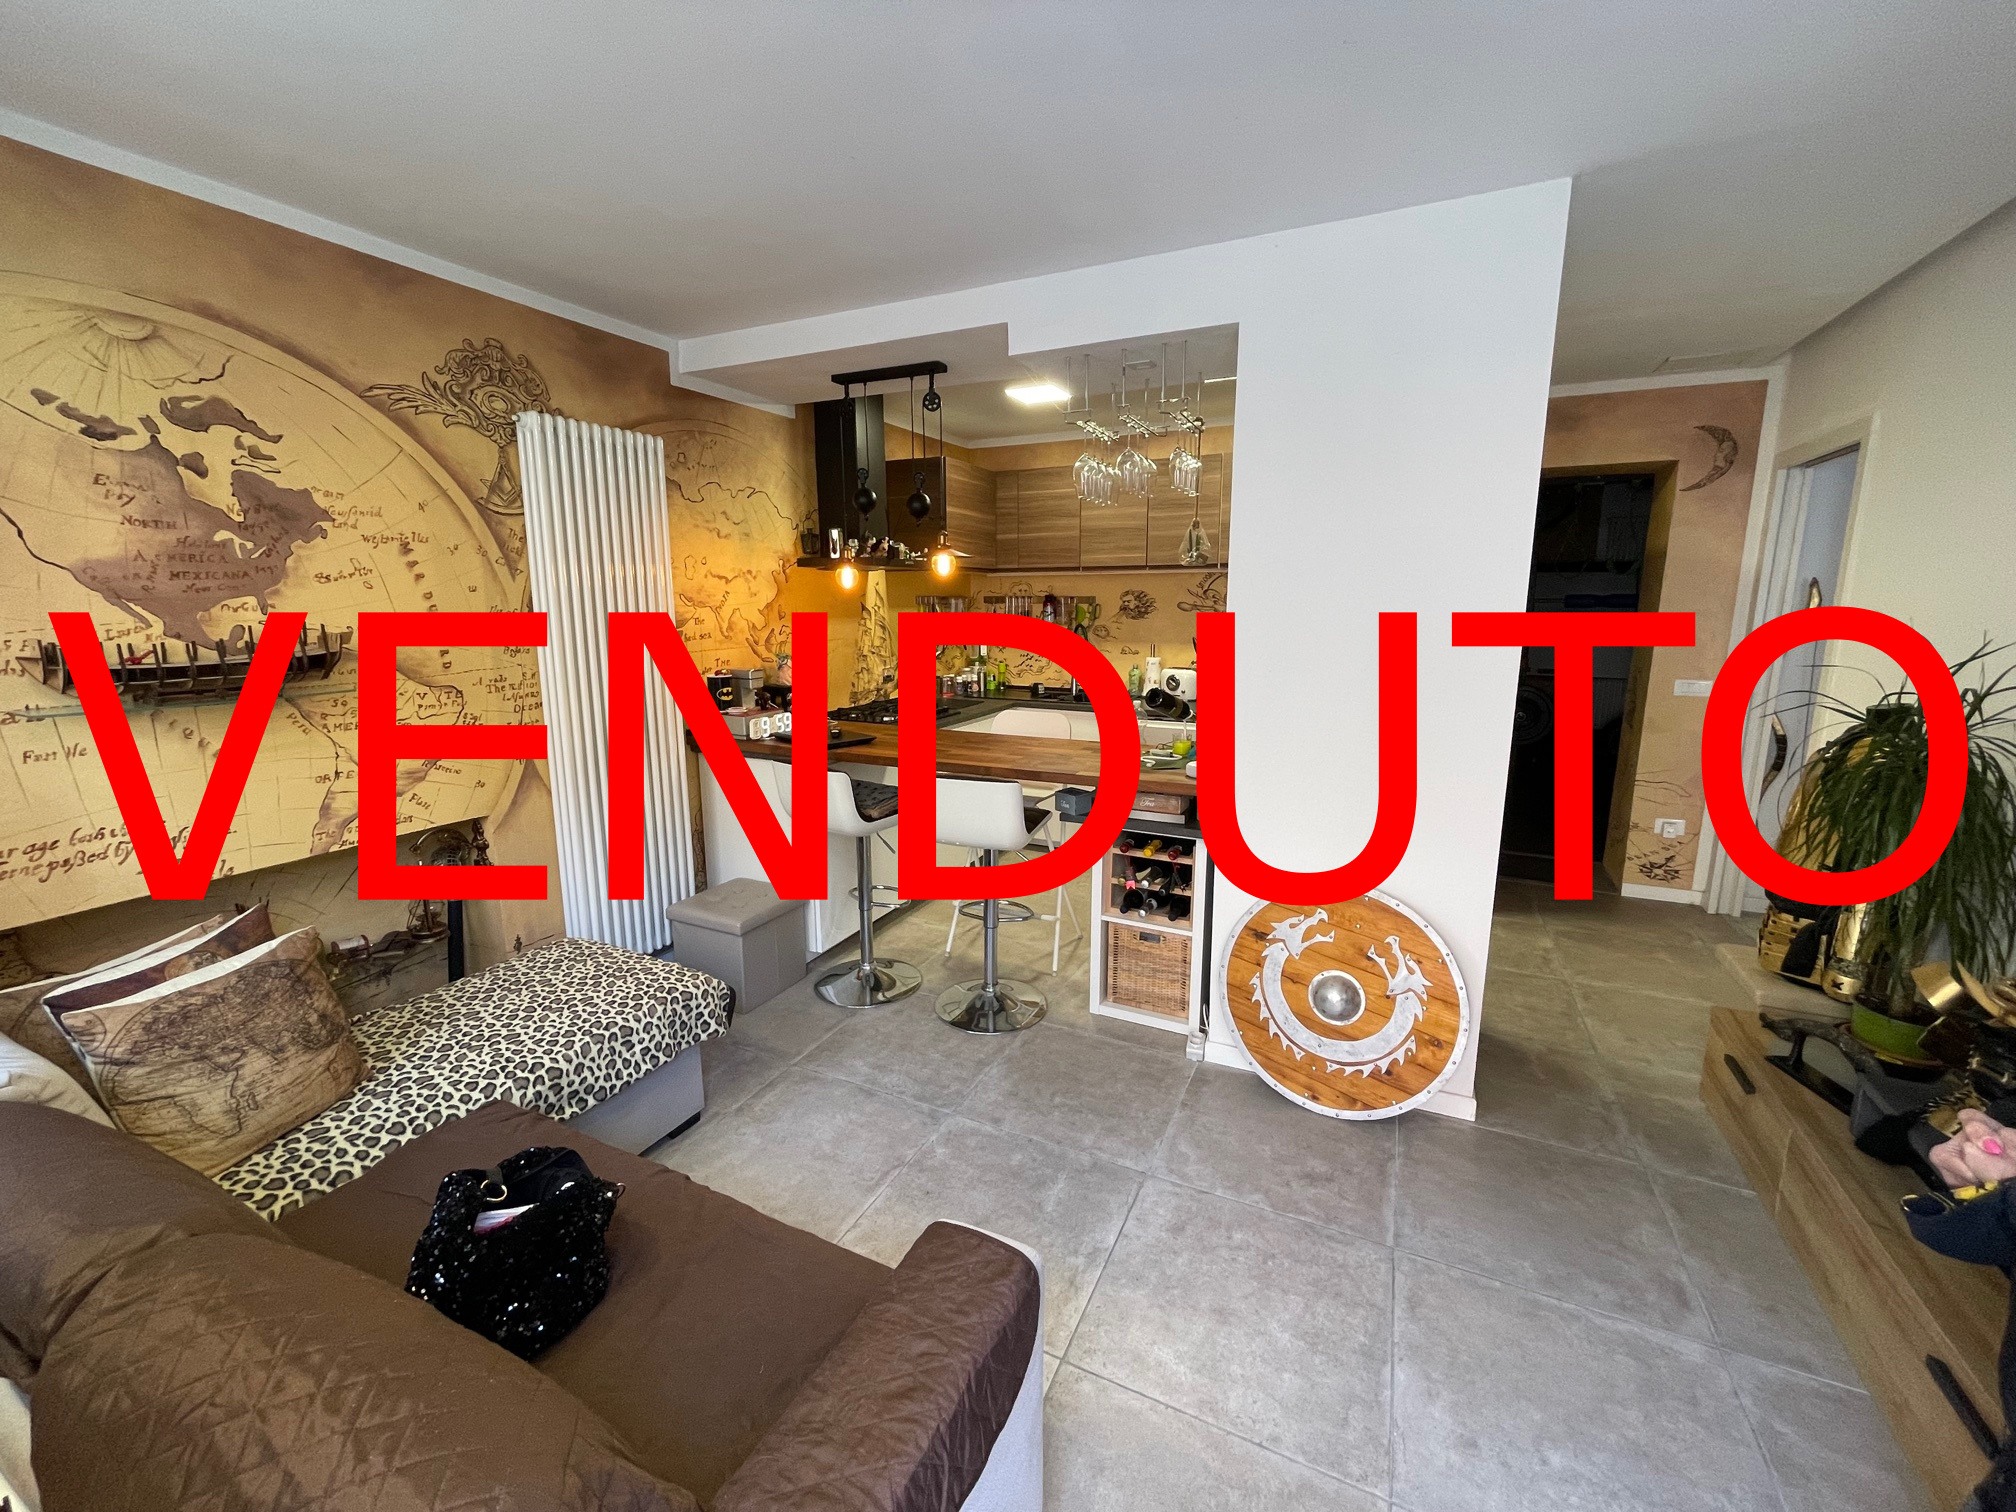 – VENDUTO – Appartamento pari a nuovo in centro a Ronchi dei Legionari